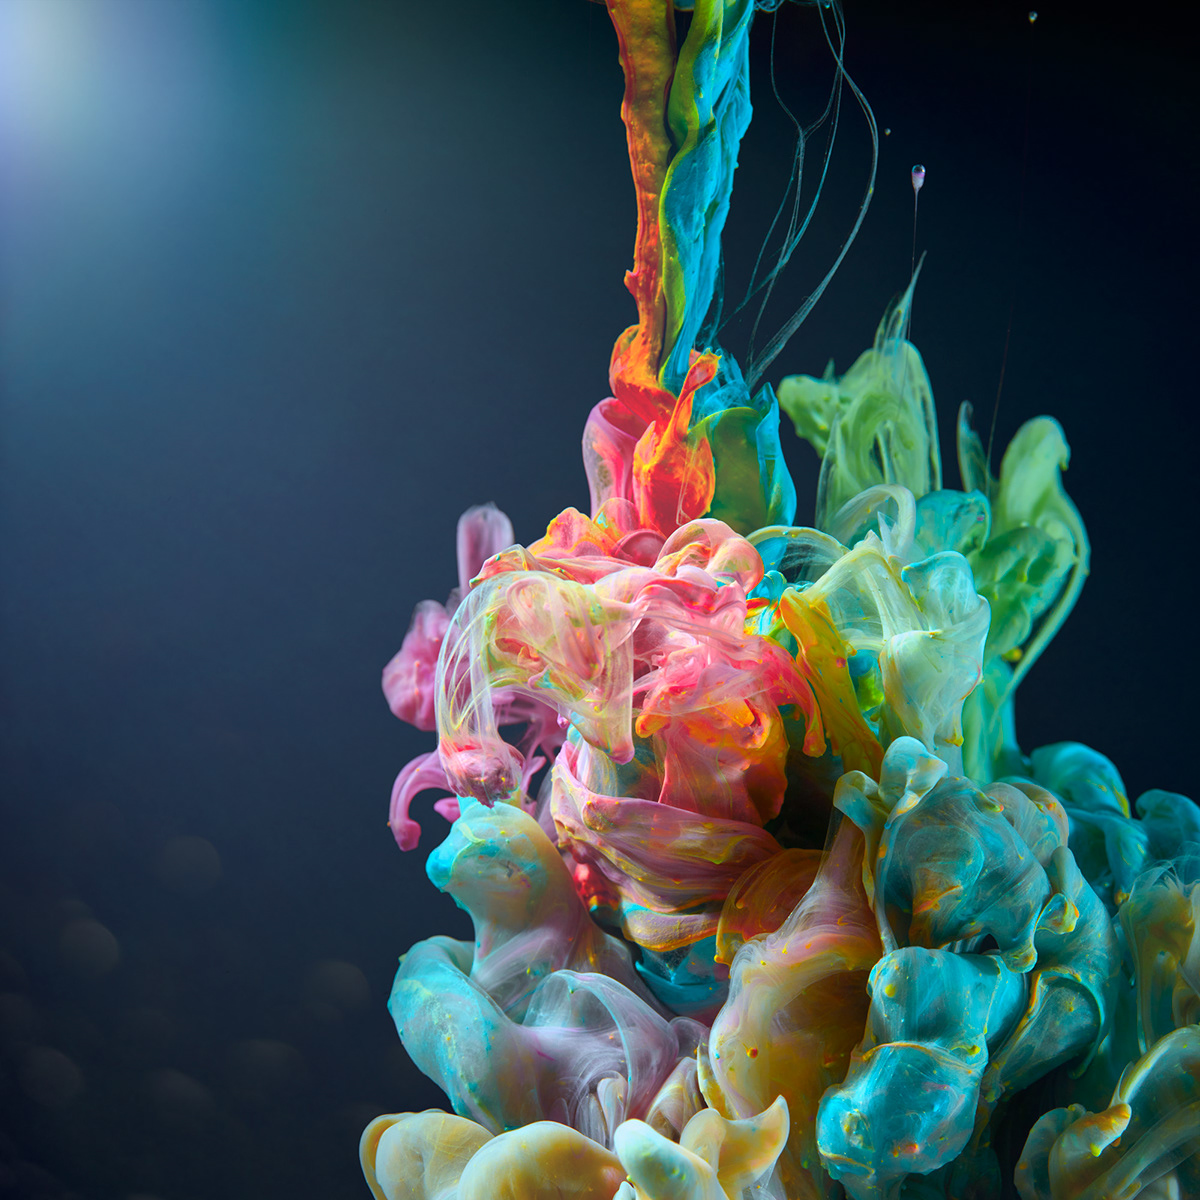 Aqueous cinematic Colourful  liquids paint water